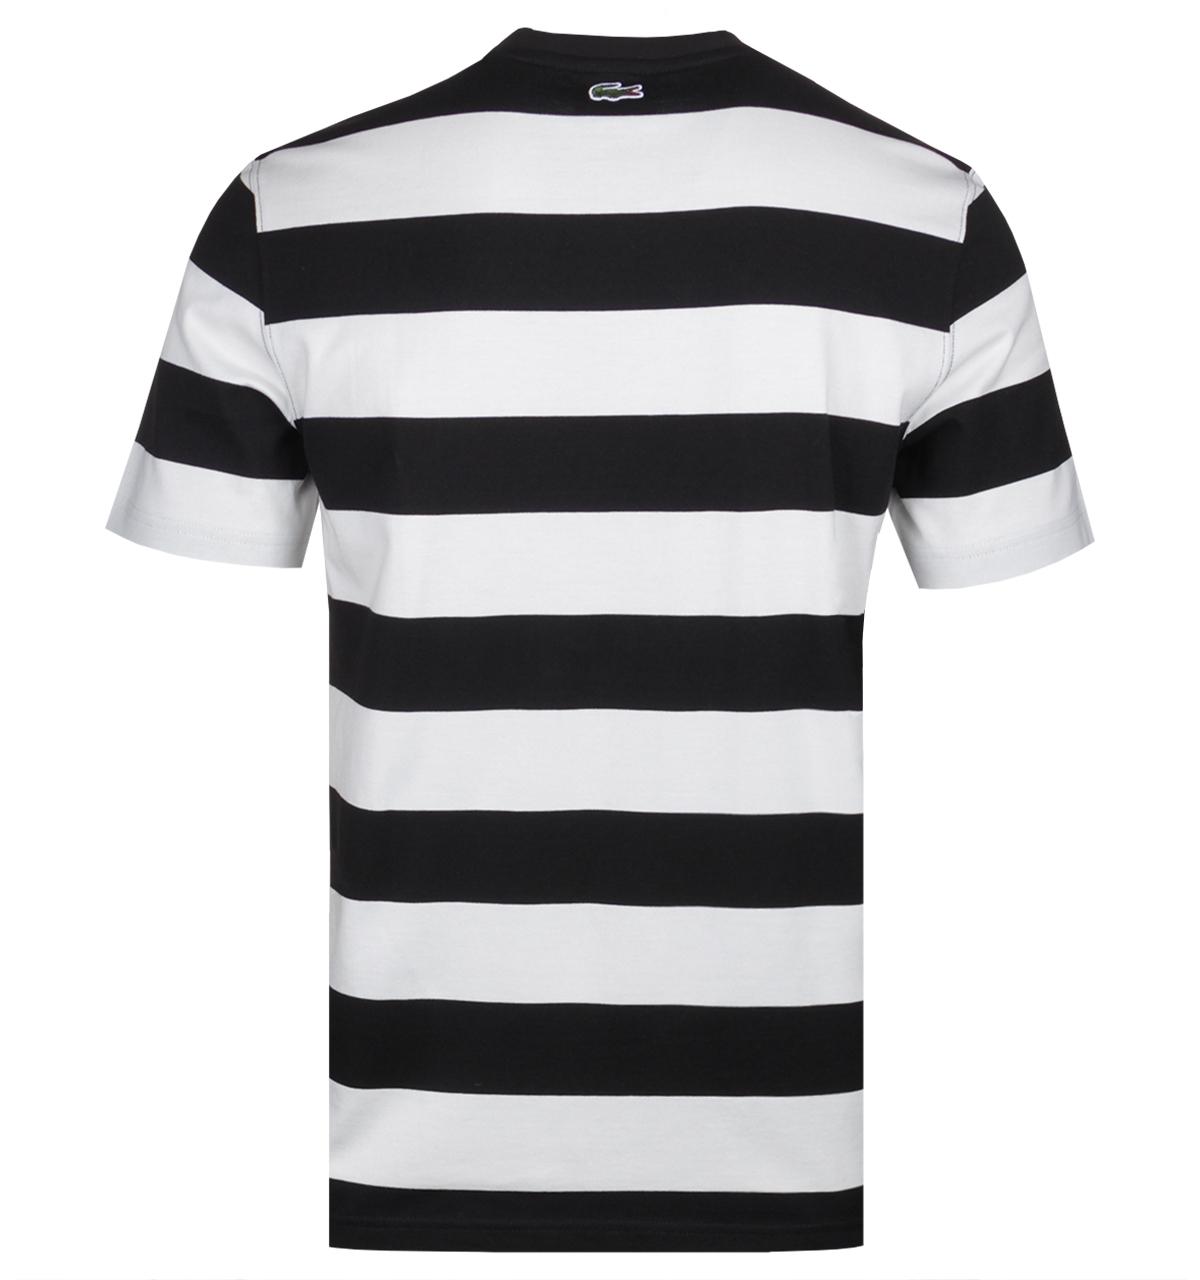 Lacoste Hoop Black & White T-shirt in Black for Men - Lyst